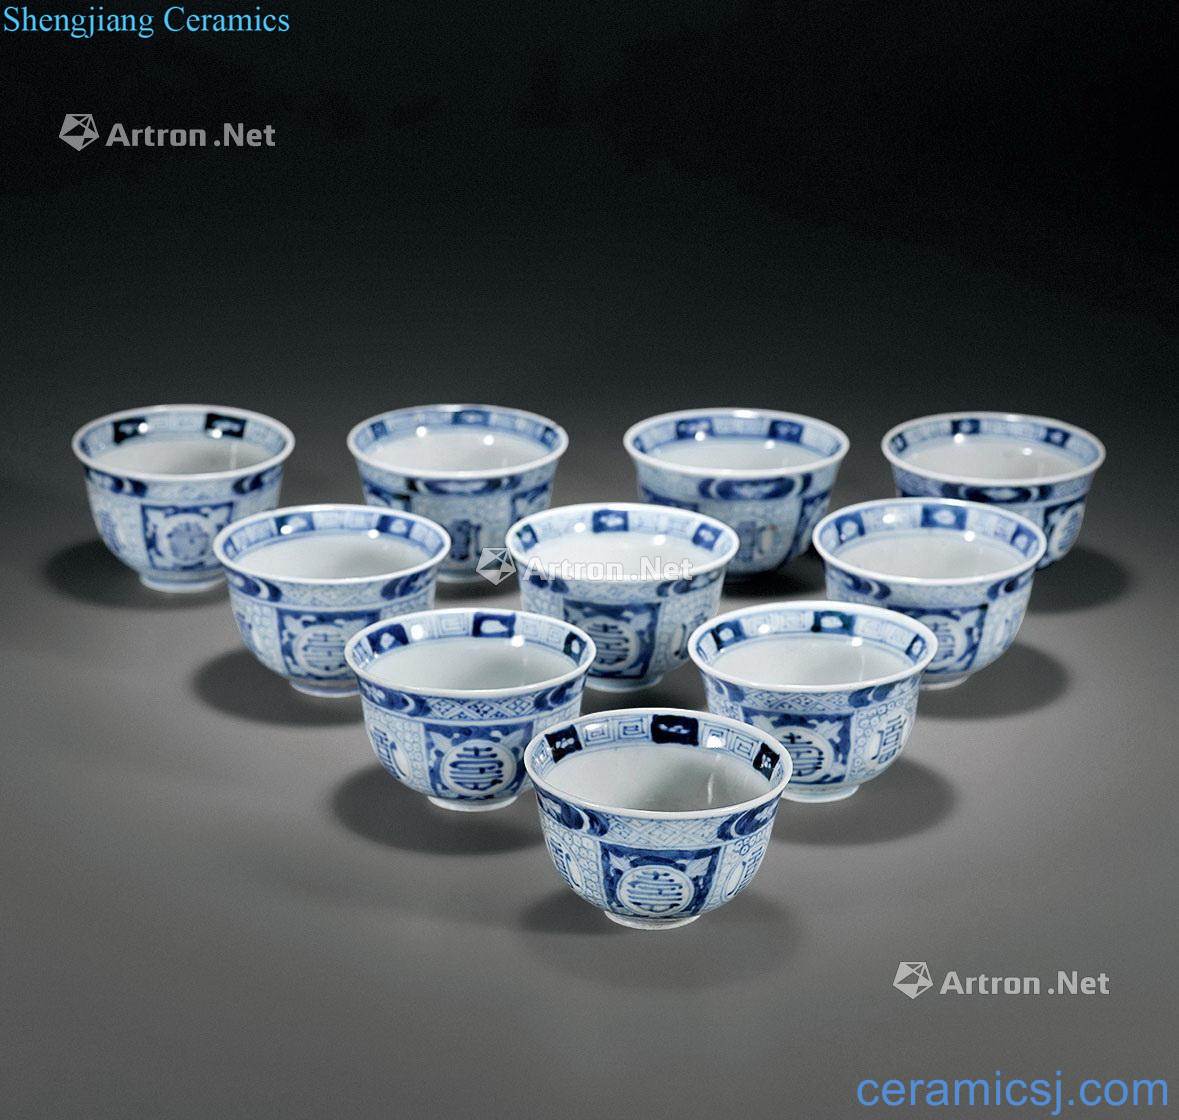 Qing porcelain cup (a)